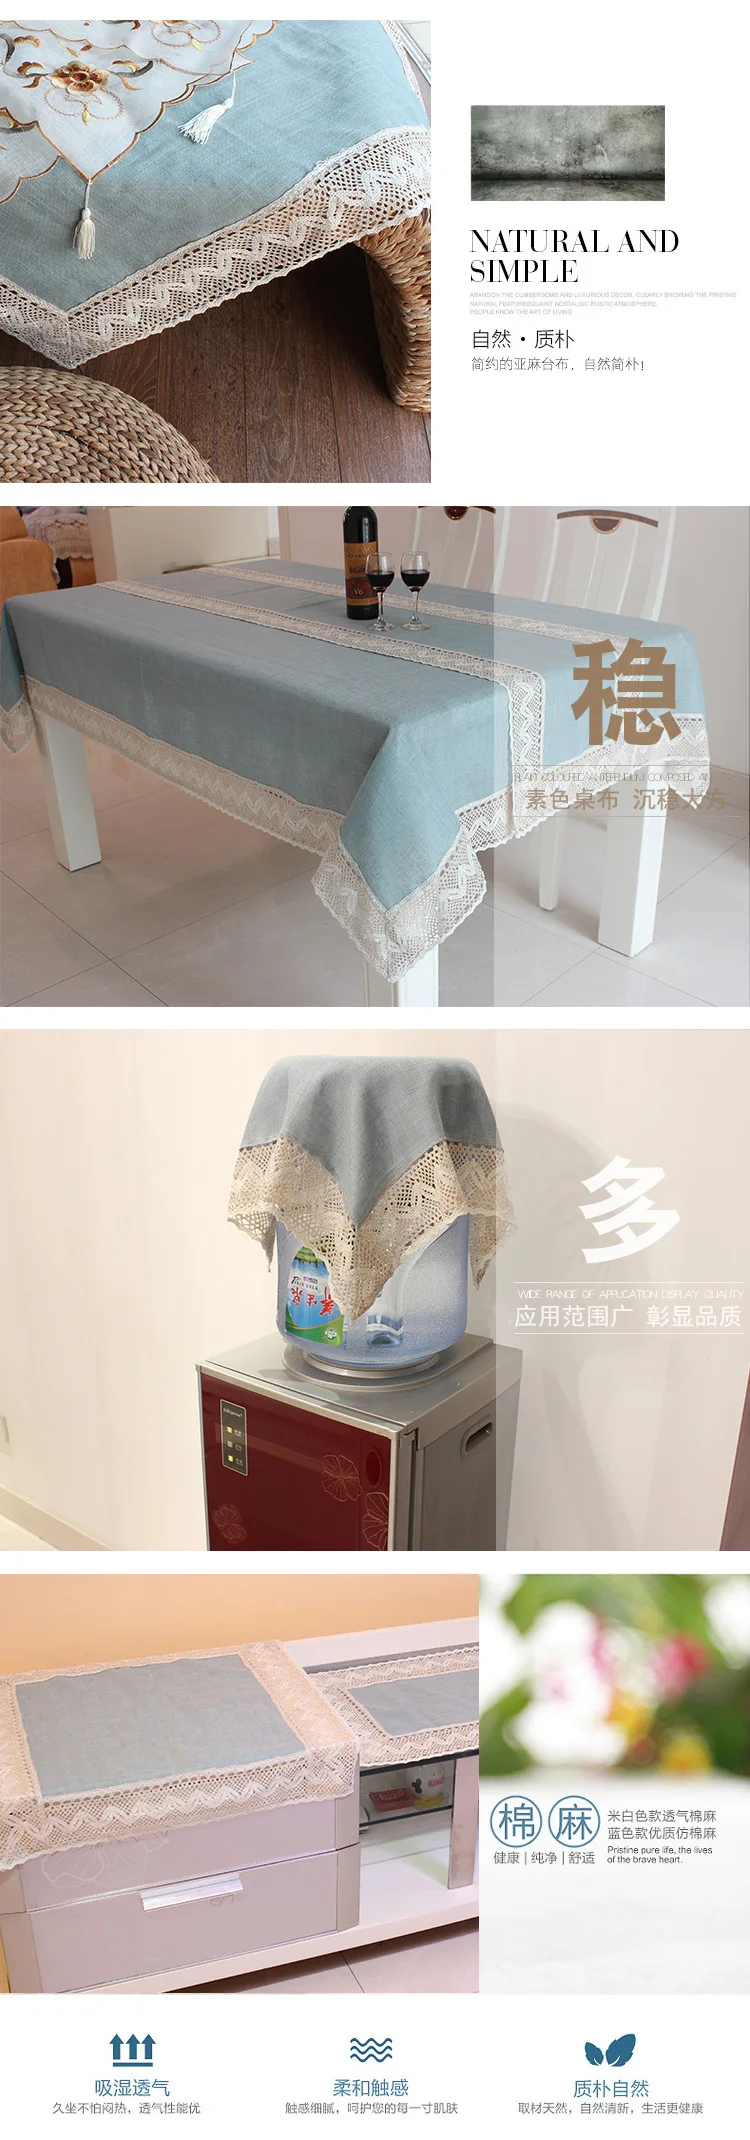 Японская льняная простая скатерть старая грубая ткань кондиционер микроволновая печь туалетный столик холодильник ТВ покрытие полотенце